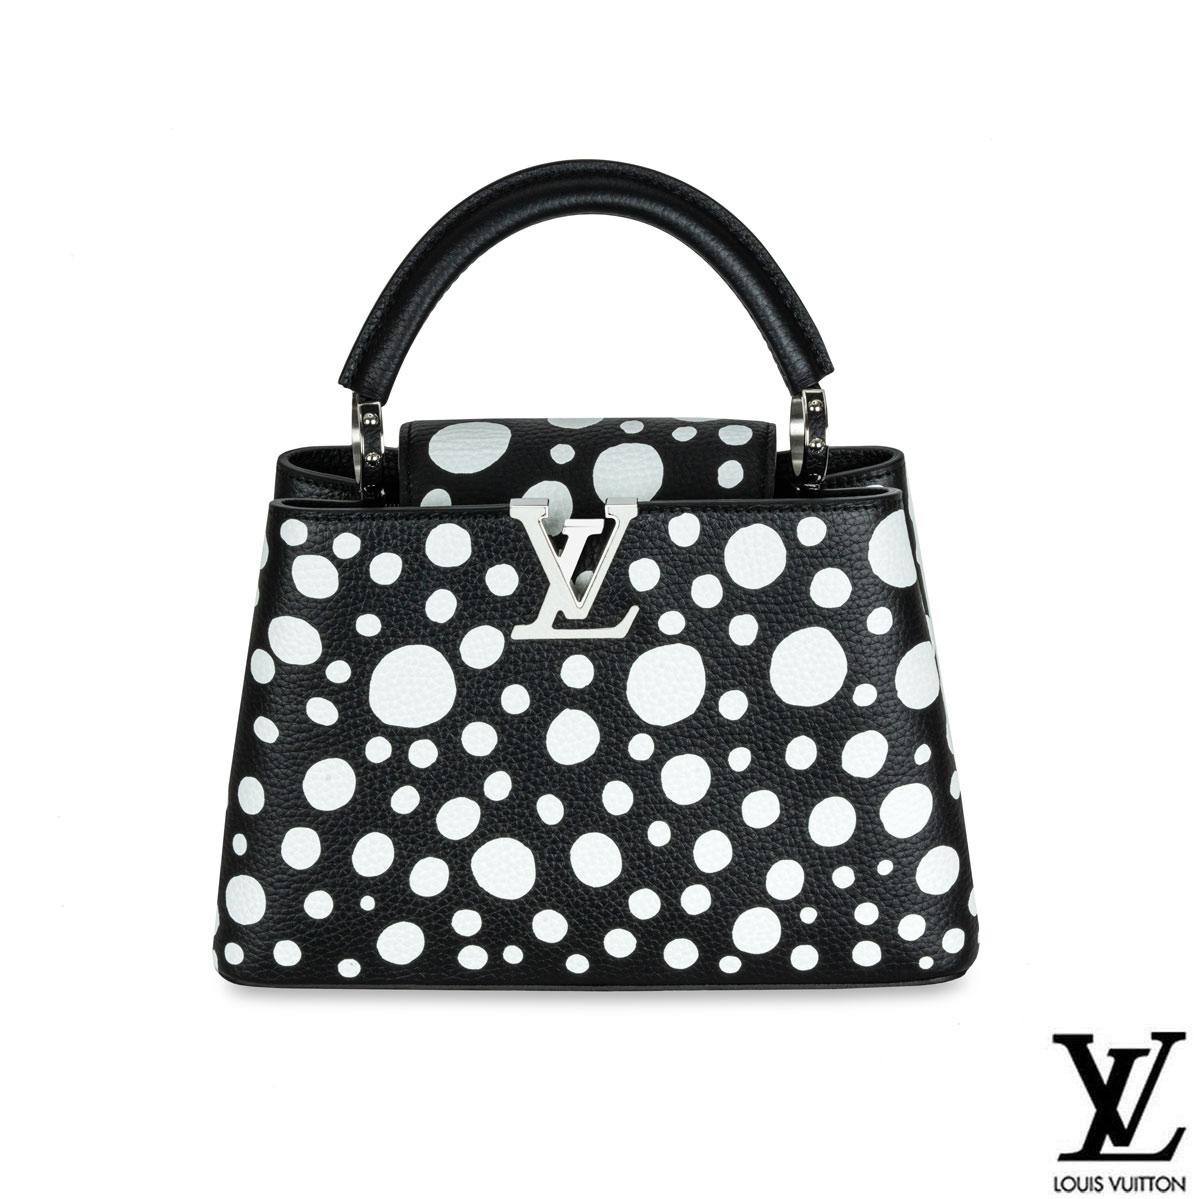 Le sac Capucine MM de Louis Vuitton, fruit d'une collaboration avec l'artiste japonaise Yayoi Kusama, est une fusion fascinante entre le luxe et l'art d'avant-garde. Ce chef-d'œuvre en édition limitée marie harmonieusement l'élégance intemporelle de